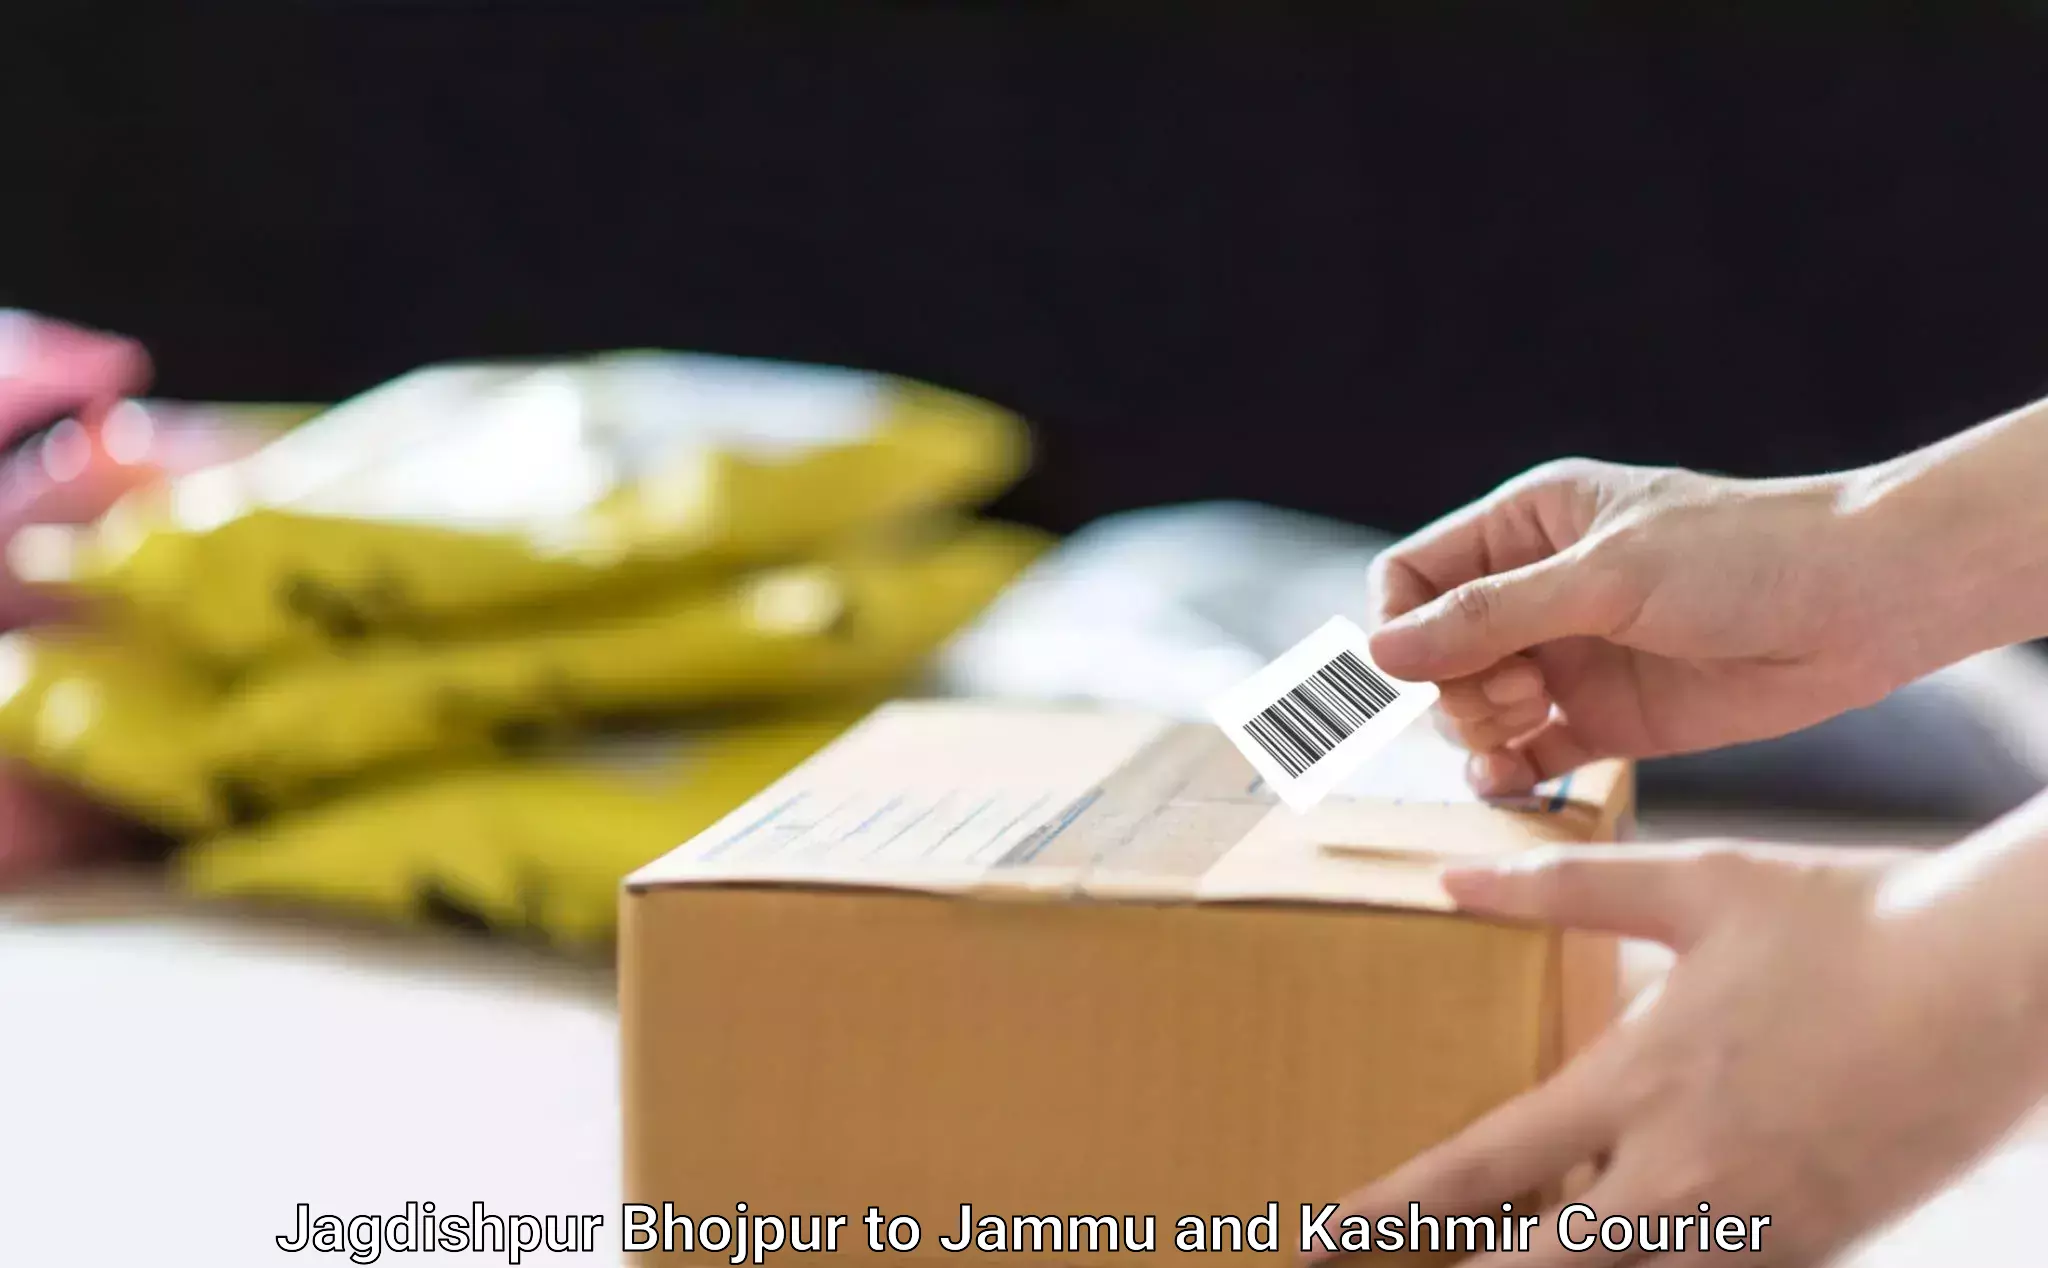 Furniture logistics in Jagdishpur Bhojpur to Jammu and Kashmir